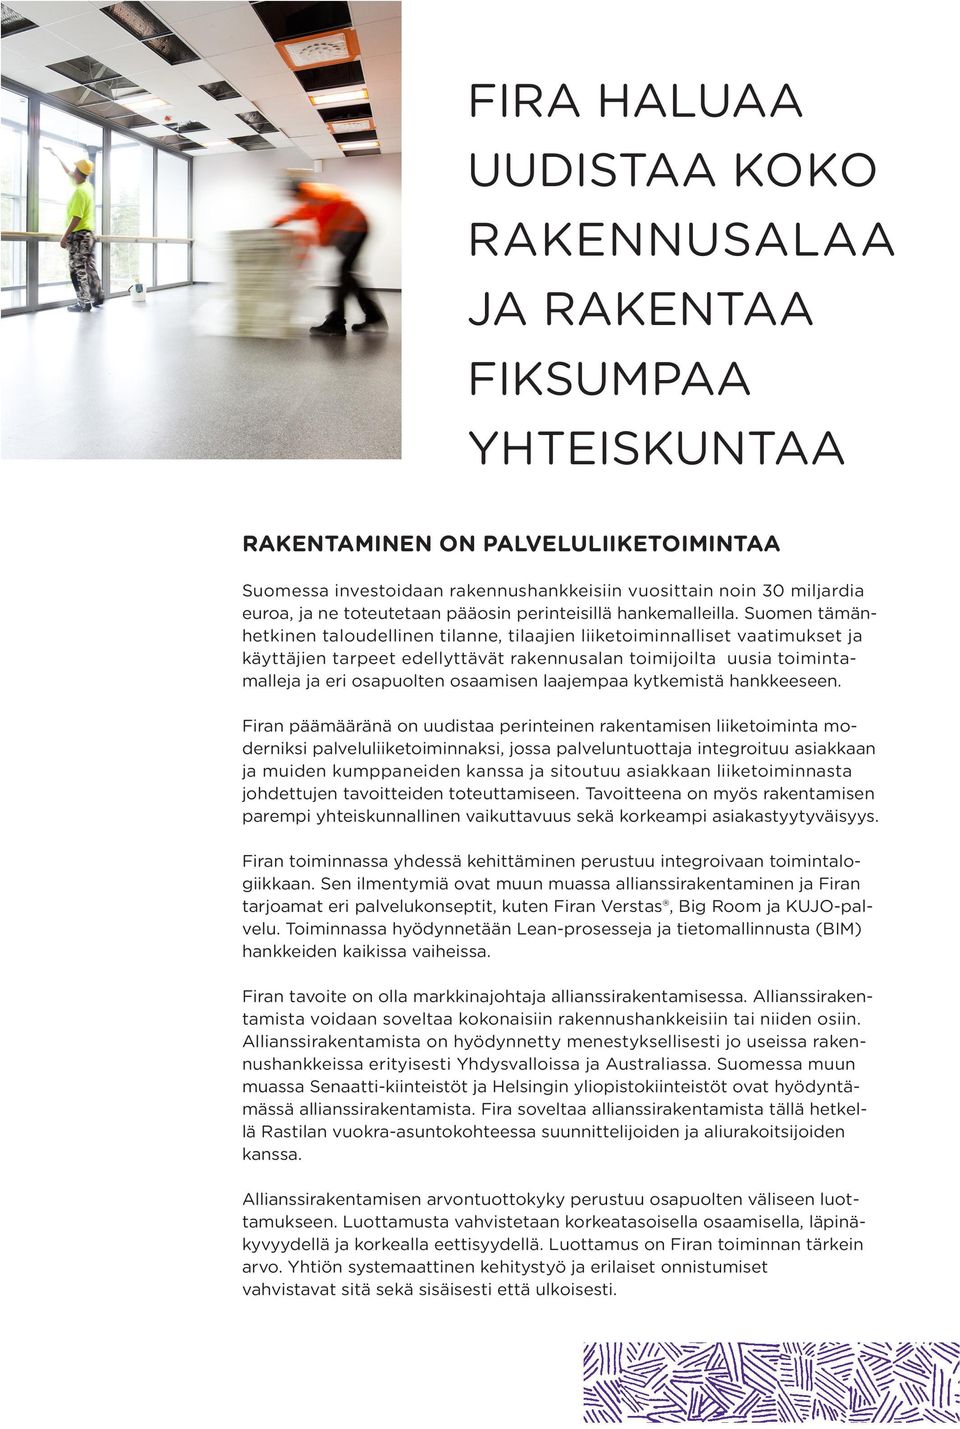 Suomen tämänhetkinen taloudellinen tilanne, tilaajien liiketoiminnalliset vaatimukset ja käyttäjien tarpeet edellyttävät rakennusalan toimijoilta uusia toimintamalleja ja eri osapuolten osaamisen